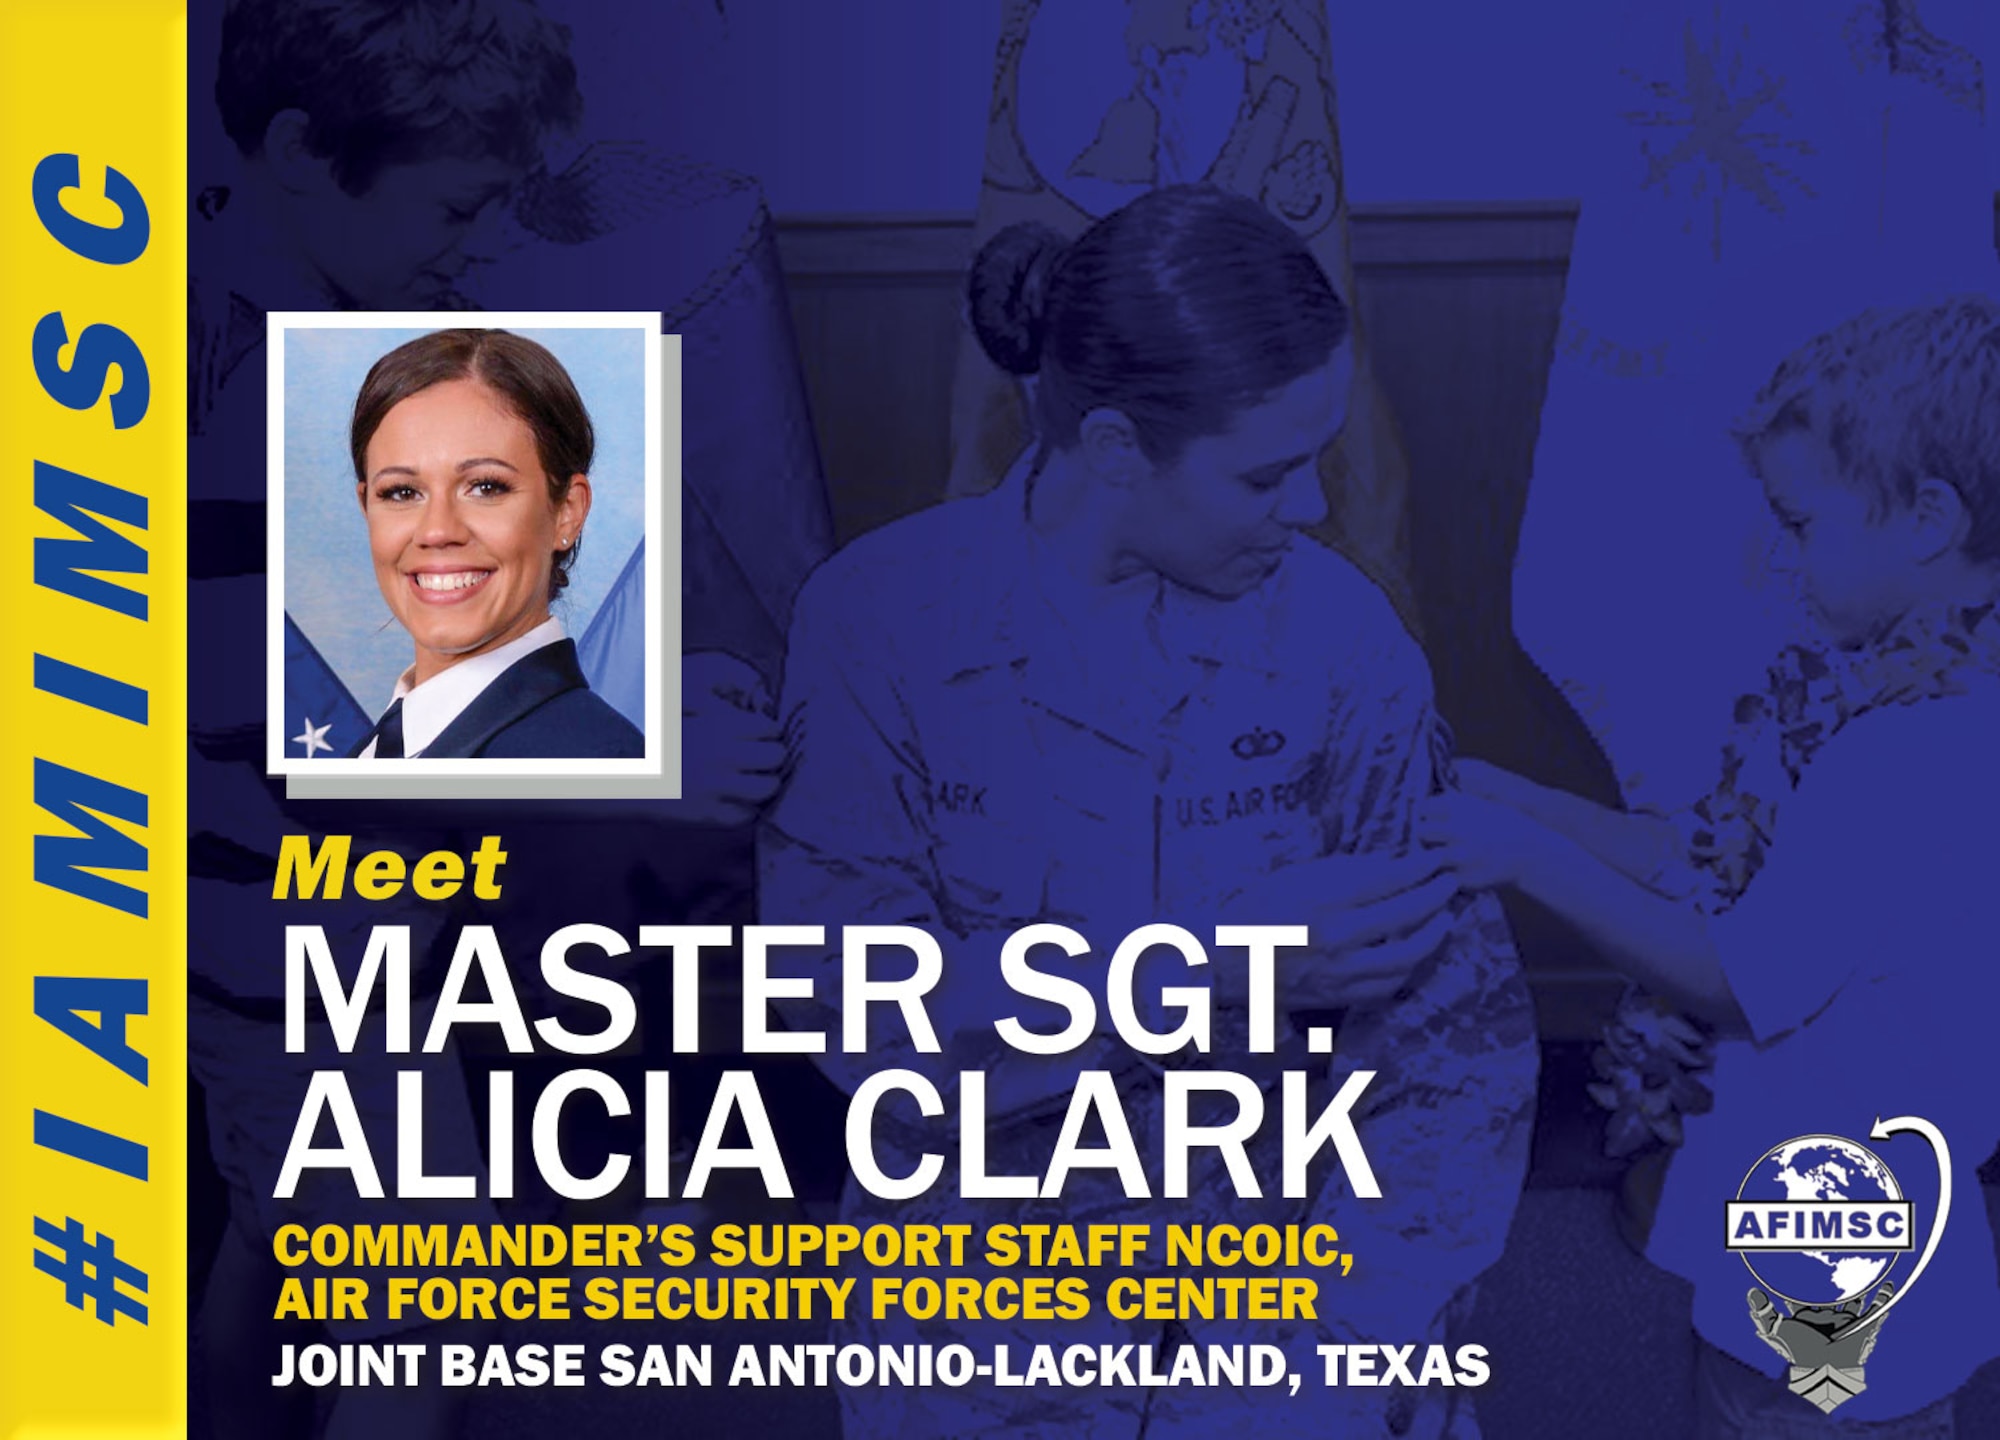 #IAMIMSC spotlight graphic for Master Sgt. Alicia Clark